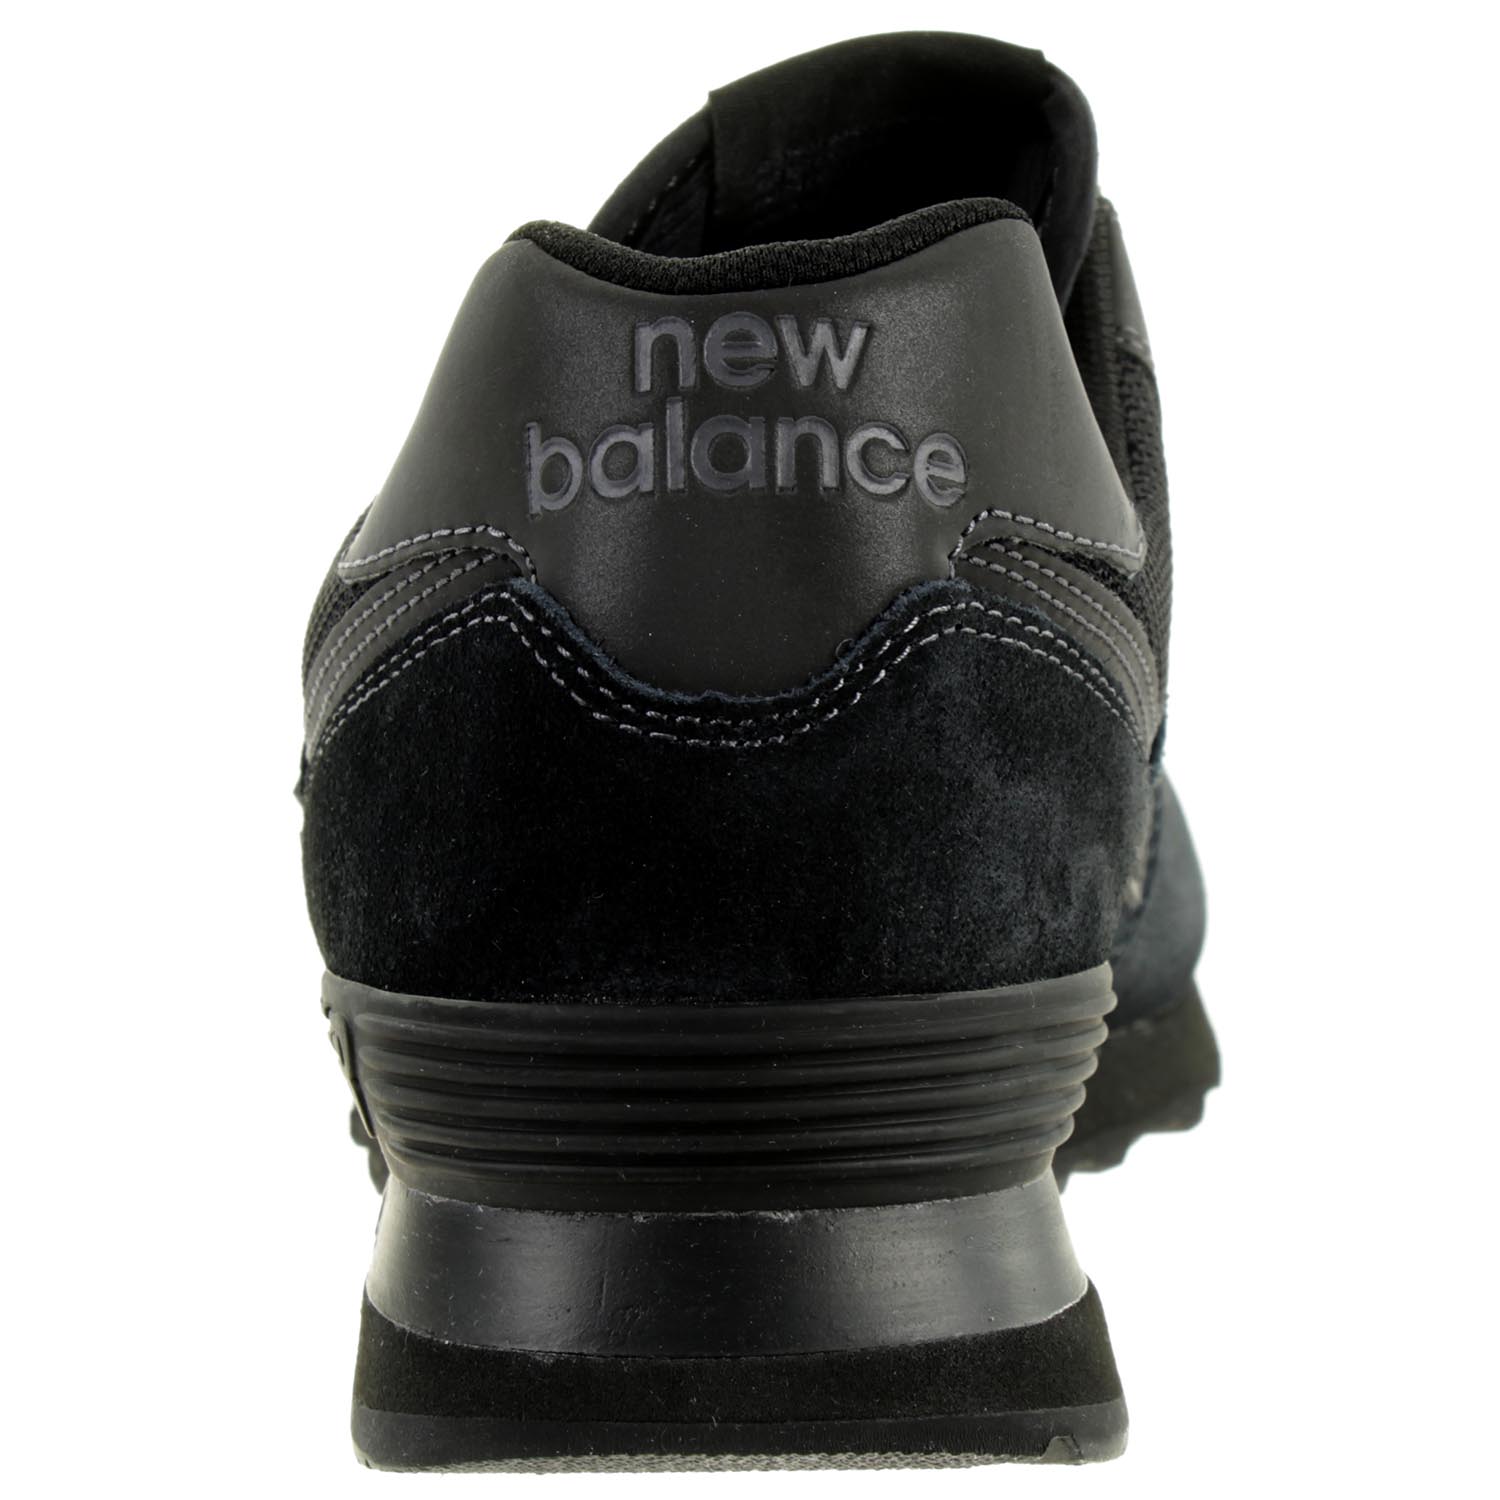 New Balance ML 574 ETE Classic Sneaker Herren Schuhe schwarz